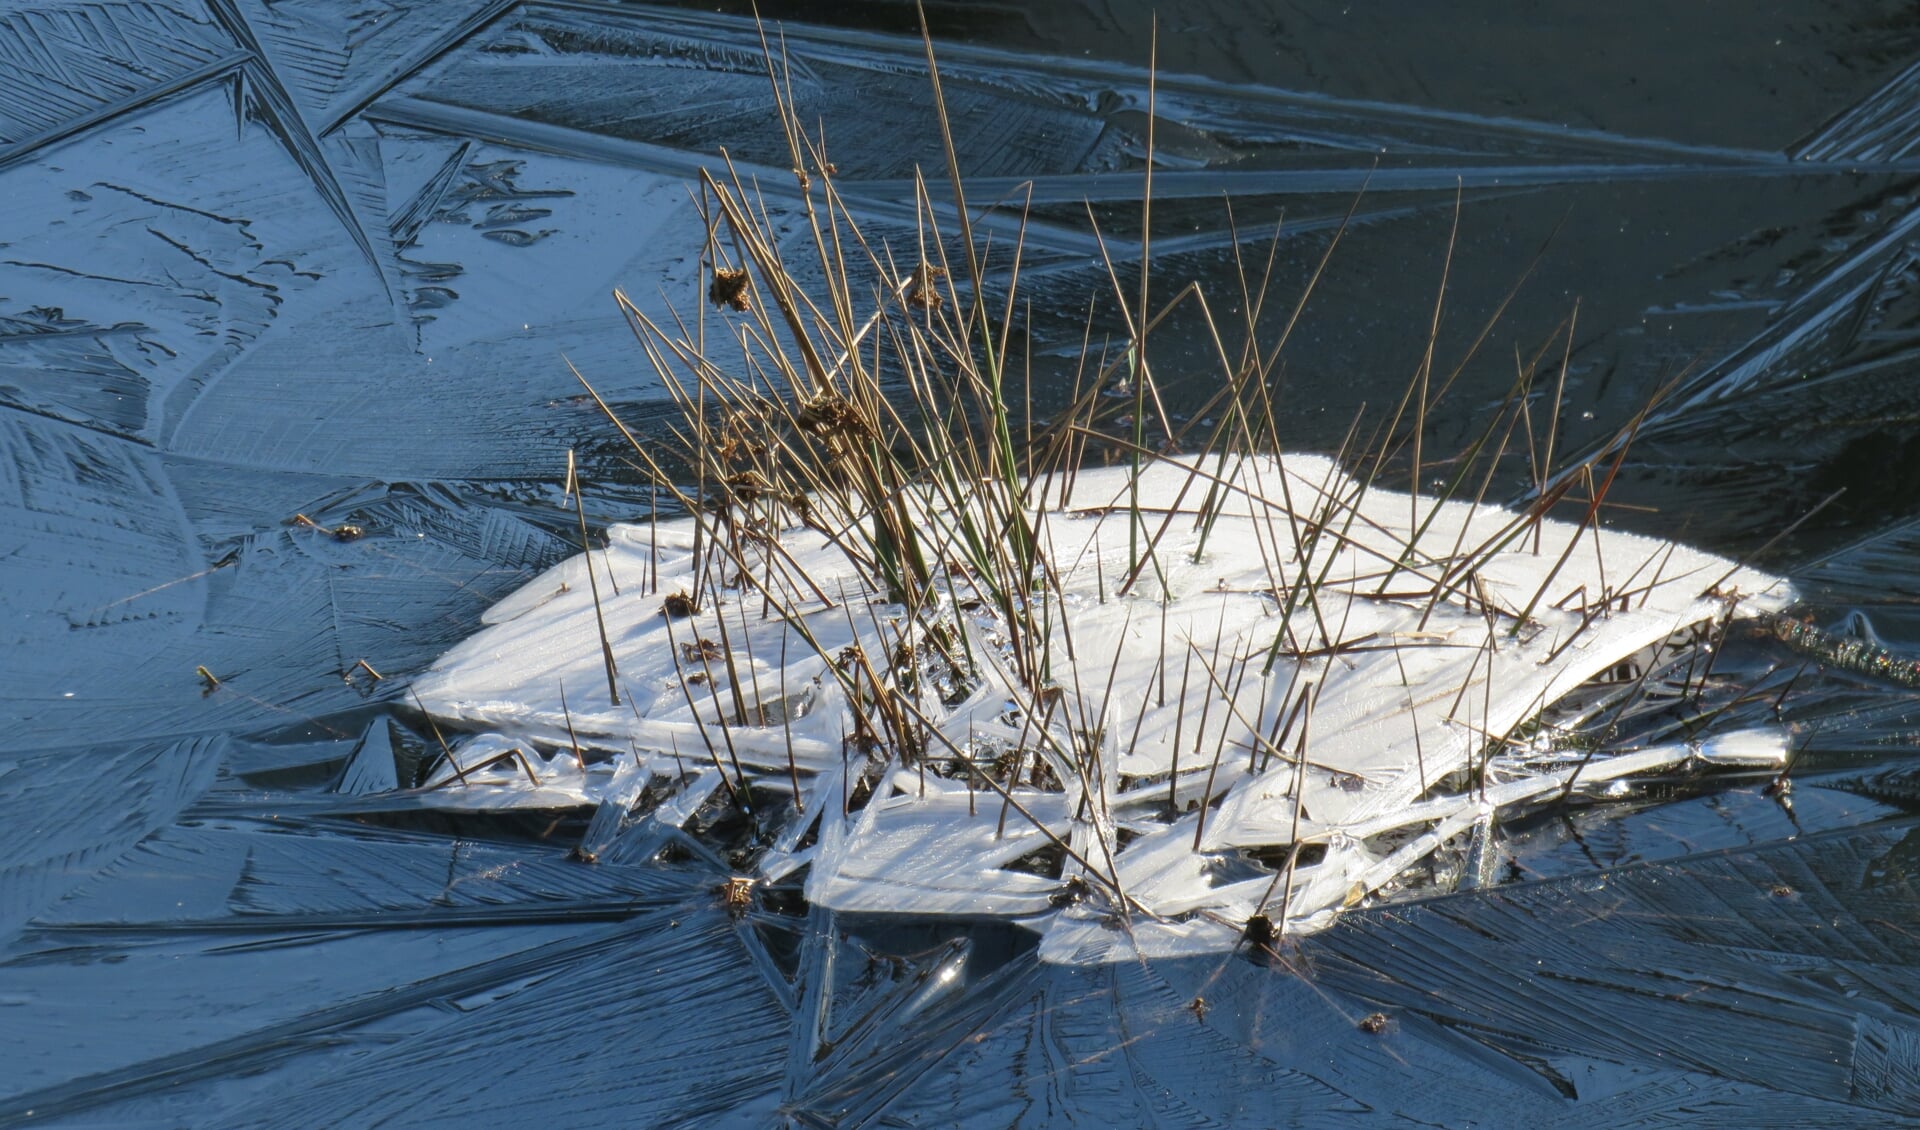 Het winterweer van de afgelopen dagen, zorgt voor mooie plaatjes. Dick Rustenburg spotte dit 'ijsboeket'.